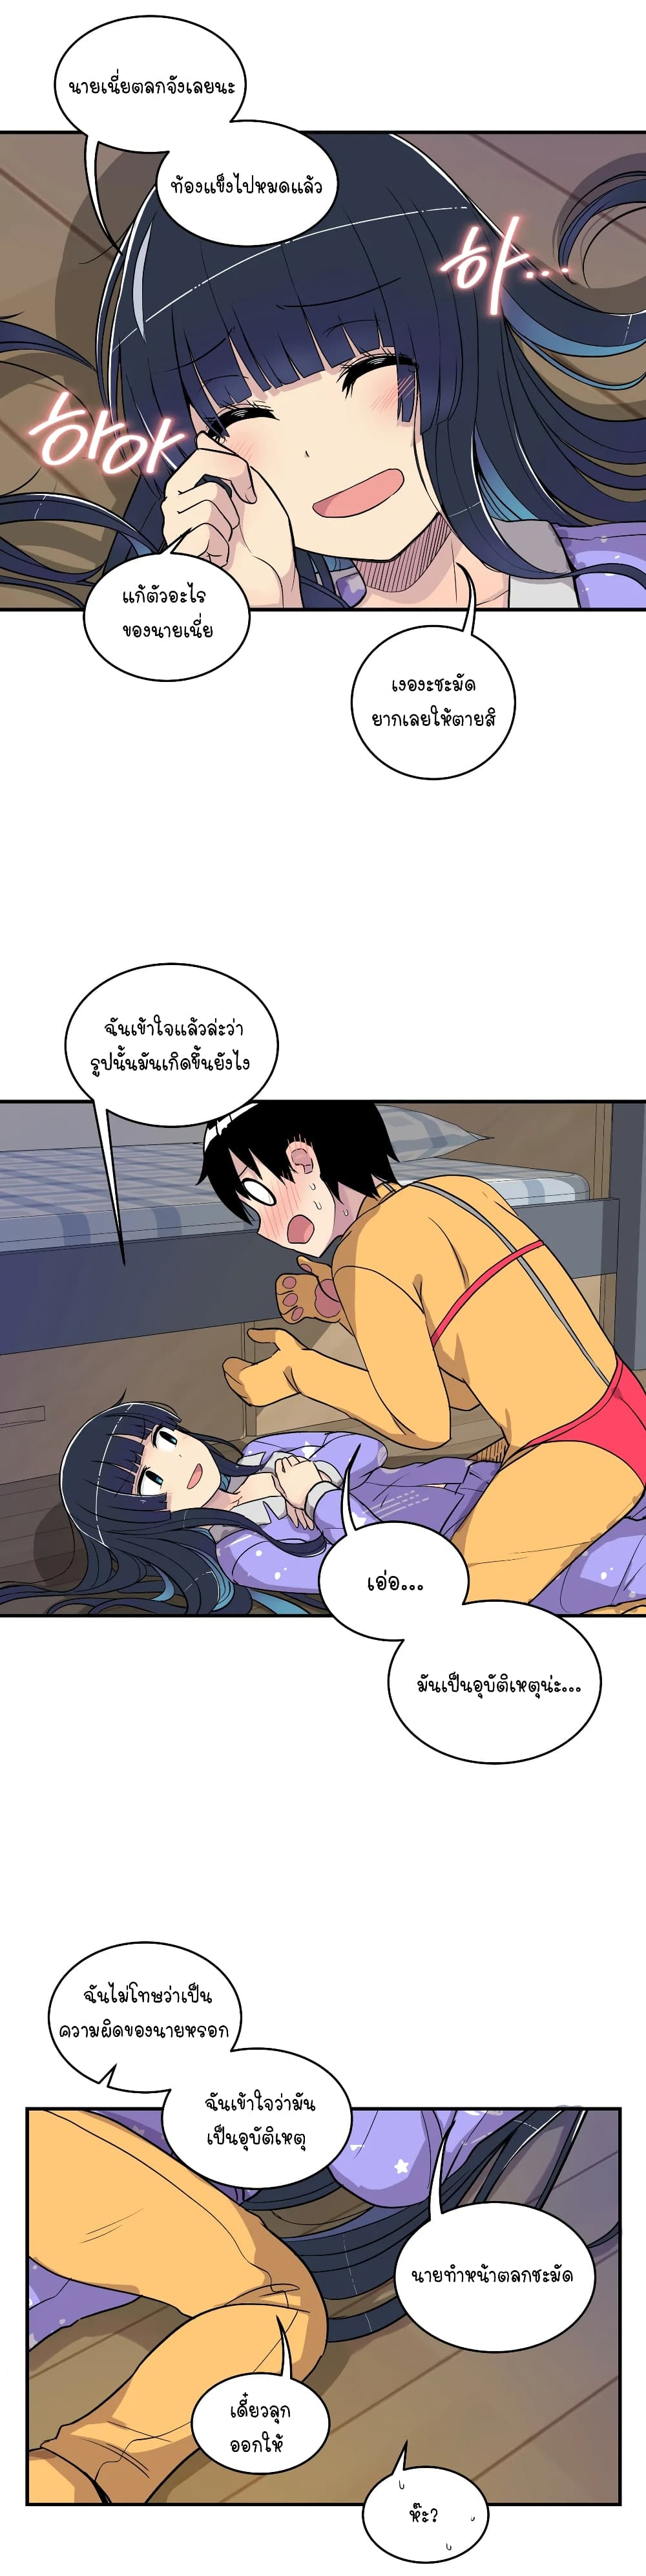 Erotic Manga Club ชมรมการ์ตูนอีโรติก 14-14